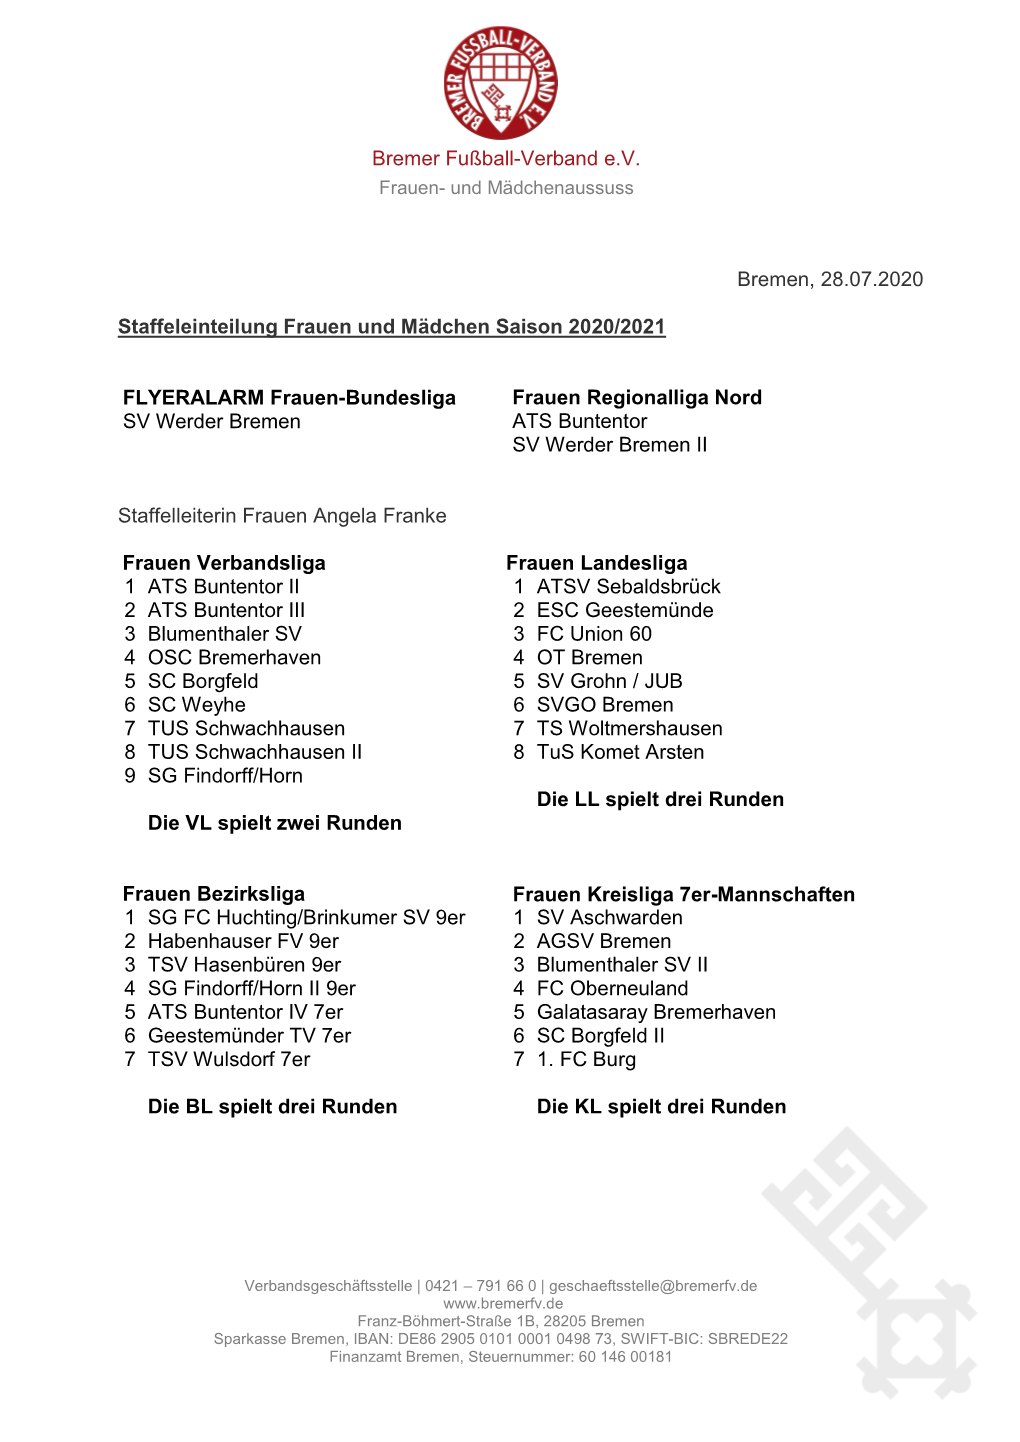 Bremen, 28.07.2020 Staffeleinteilung Frauen Und Mädchen Saison 2020/2021 Frauen Regionalliga Nord FLYERALARM Frauen-Bundesliga